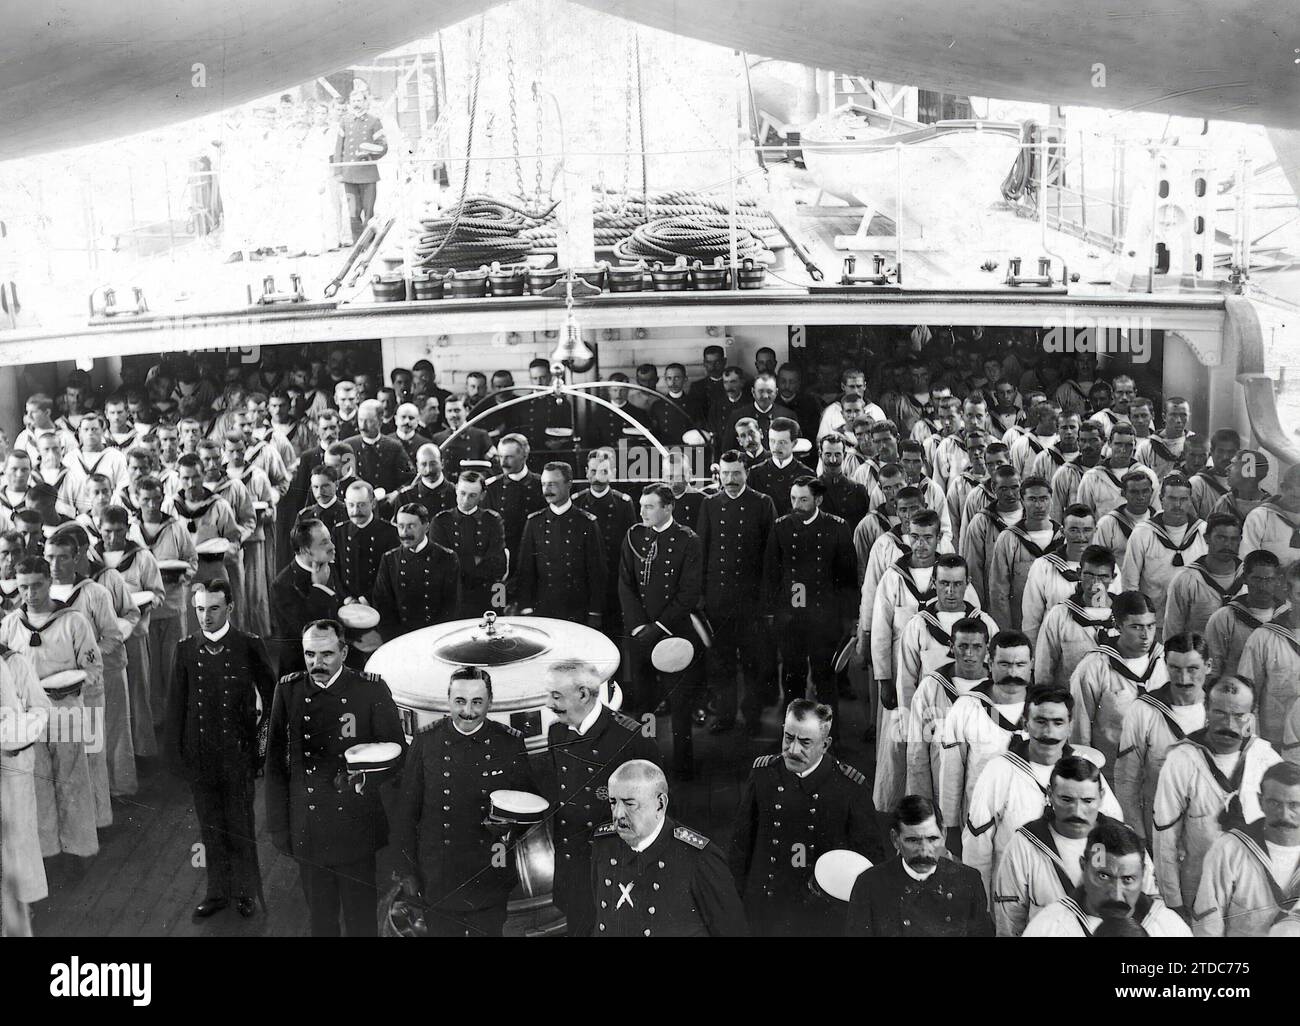 Melilla, Oktober 1911. Die Messe an Bord in Melilla. Konteradmiral Sántalo (x), Offiziere und Seeleute der "Pelayo"-Hörmesse auf dem Schiff. Quelle: Album/Archivo ABC/Rectoret Stockfoto